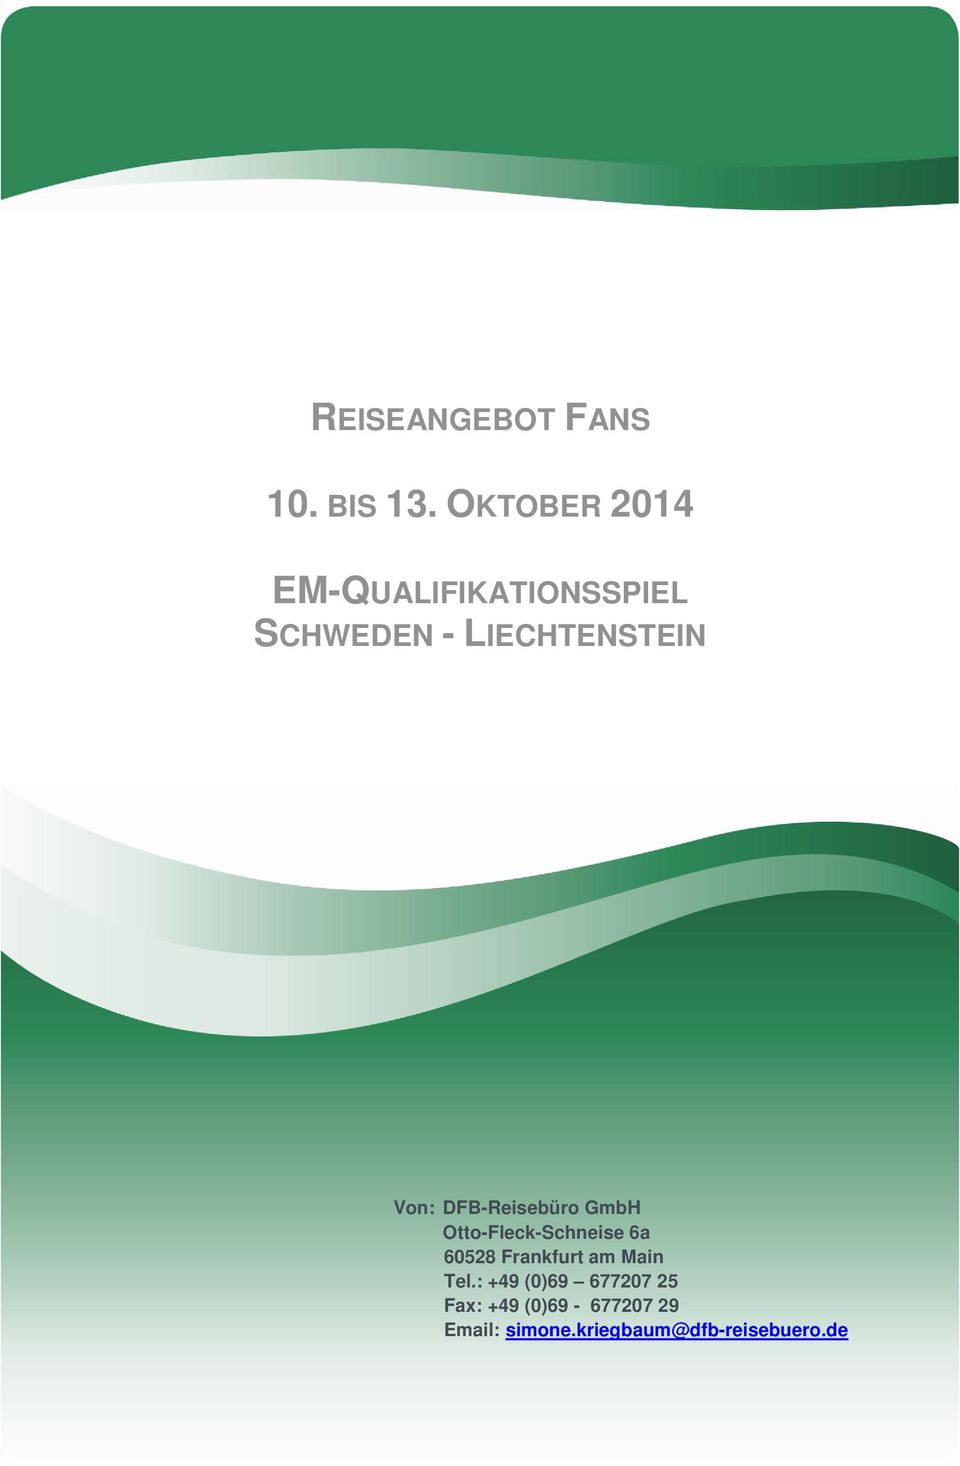 Von: DFB-Reisebüro GmbH Otto-Fleck-Schneise 6a 60528 Frankfurt